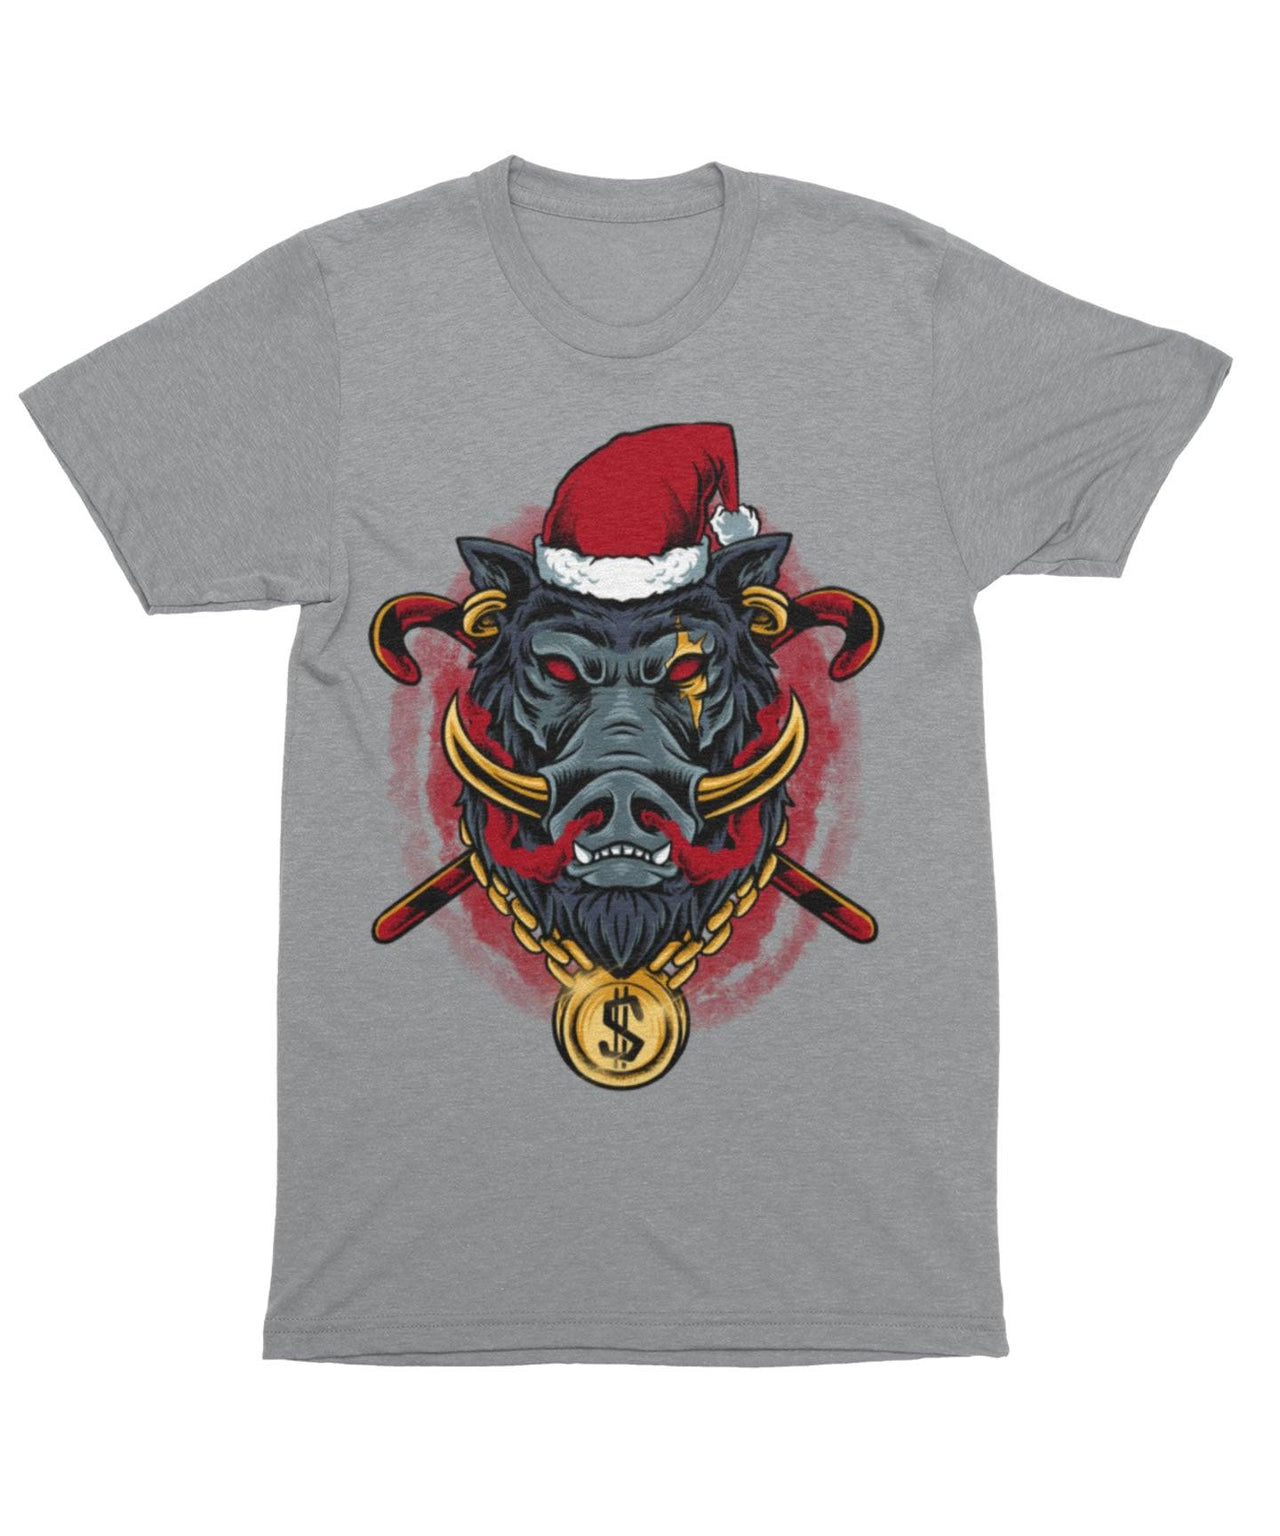 Golden Boar Santa Unisex Christmas Graphic T-Shirt For Men 8Ball